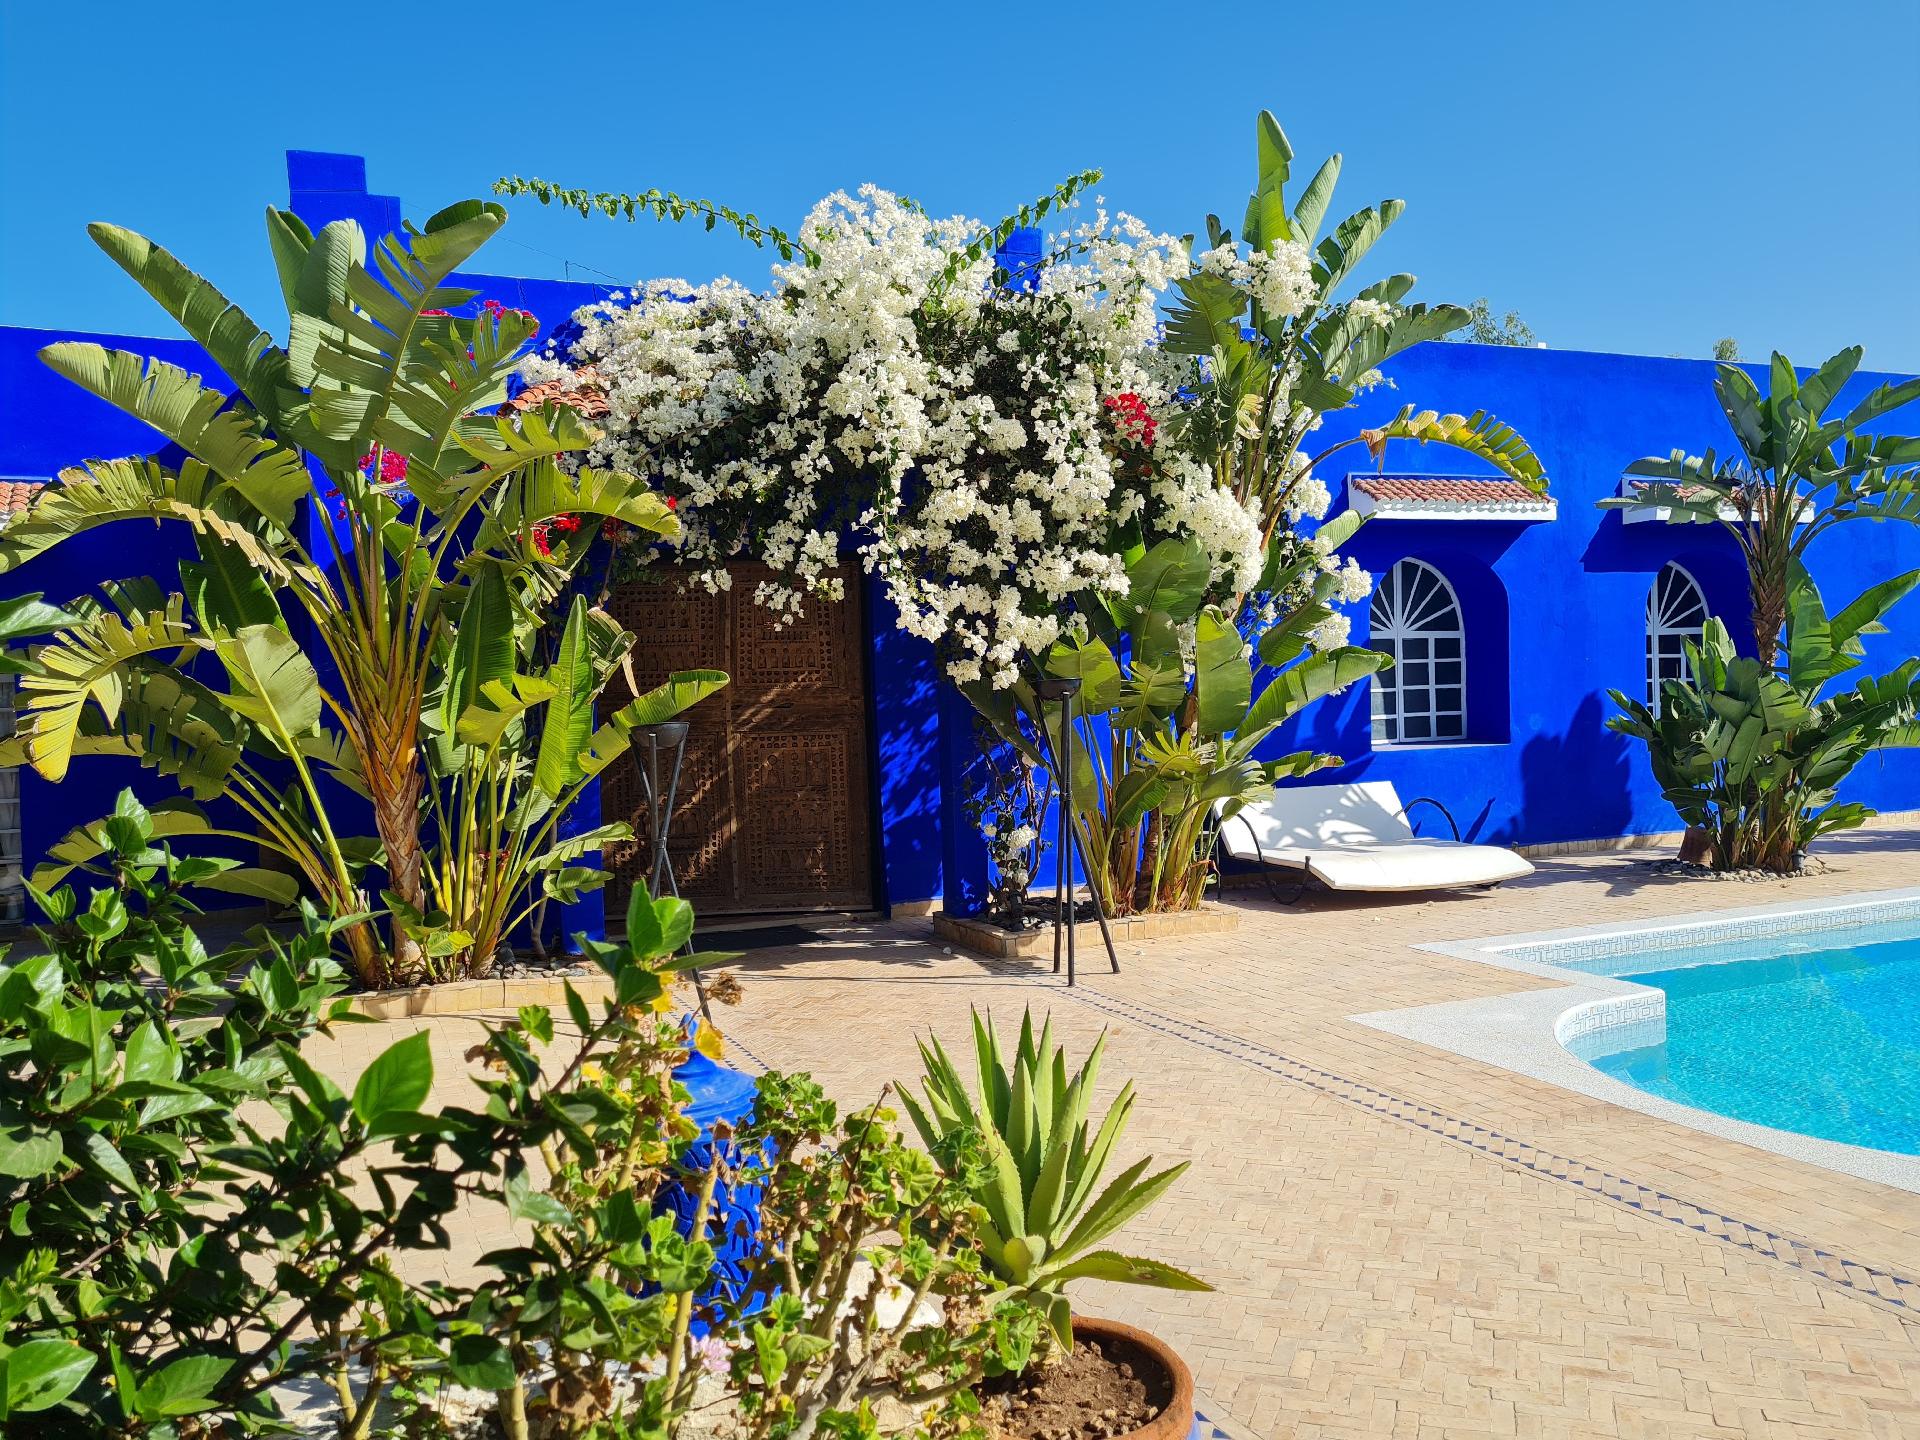 Ferienhaus mit Privatpool für 10 Personen ca. Ferienhaus in Marokko